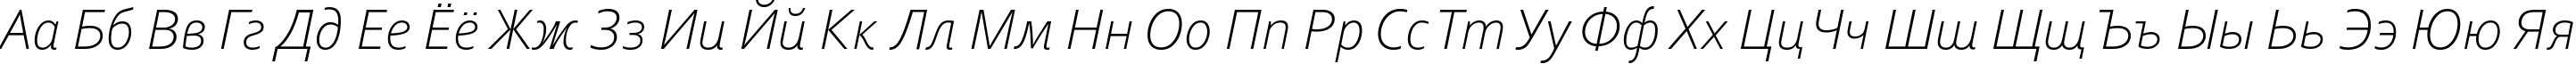 Пример написания русского алфавита шрифтом Corbel Light Italic